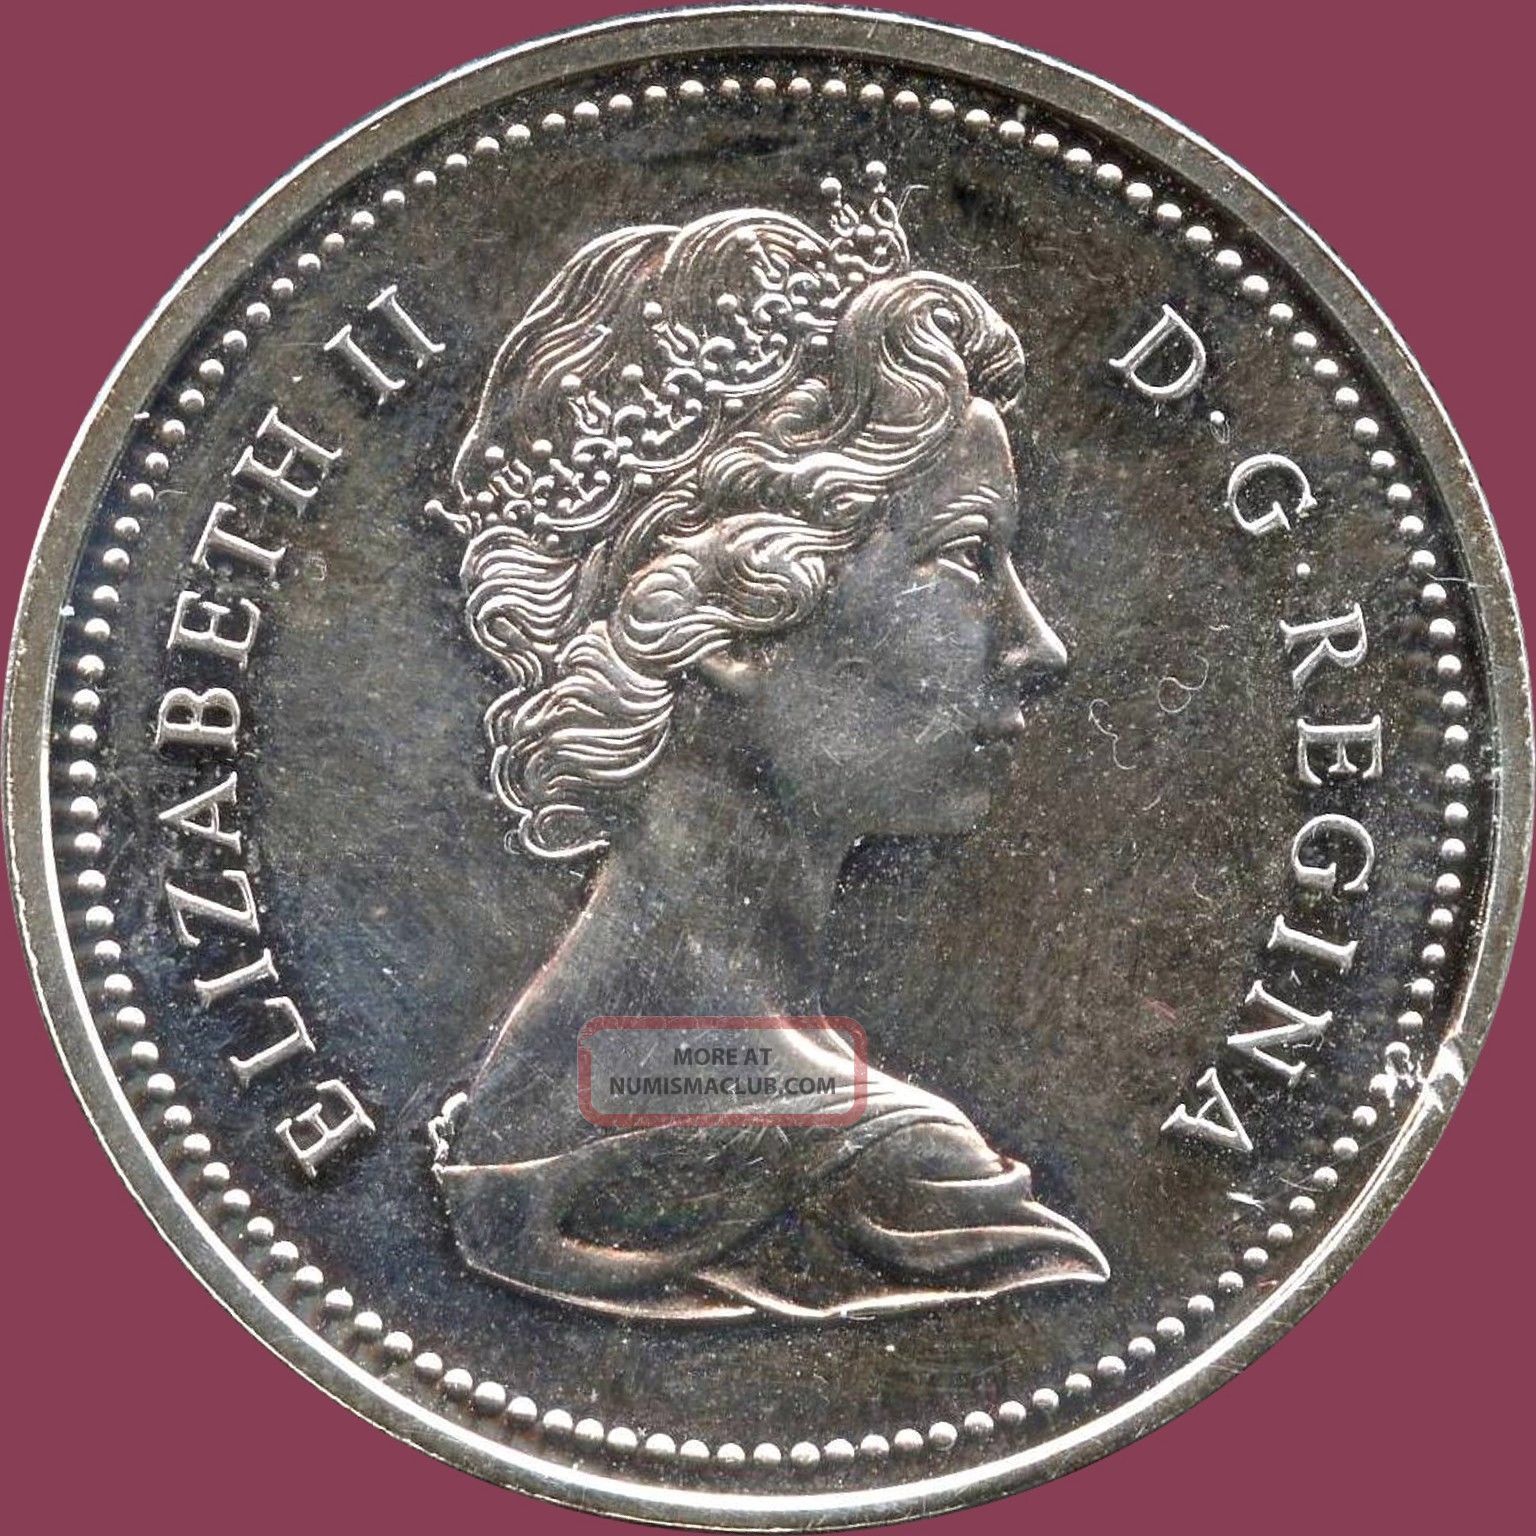 1975-canada-uncirculated-silver-dollar-coin-23-3-grams-500-silver